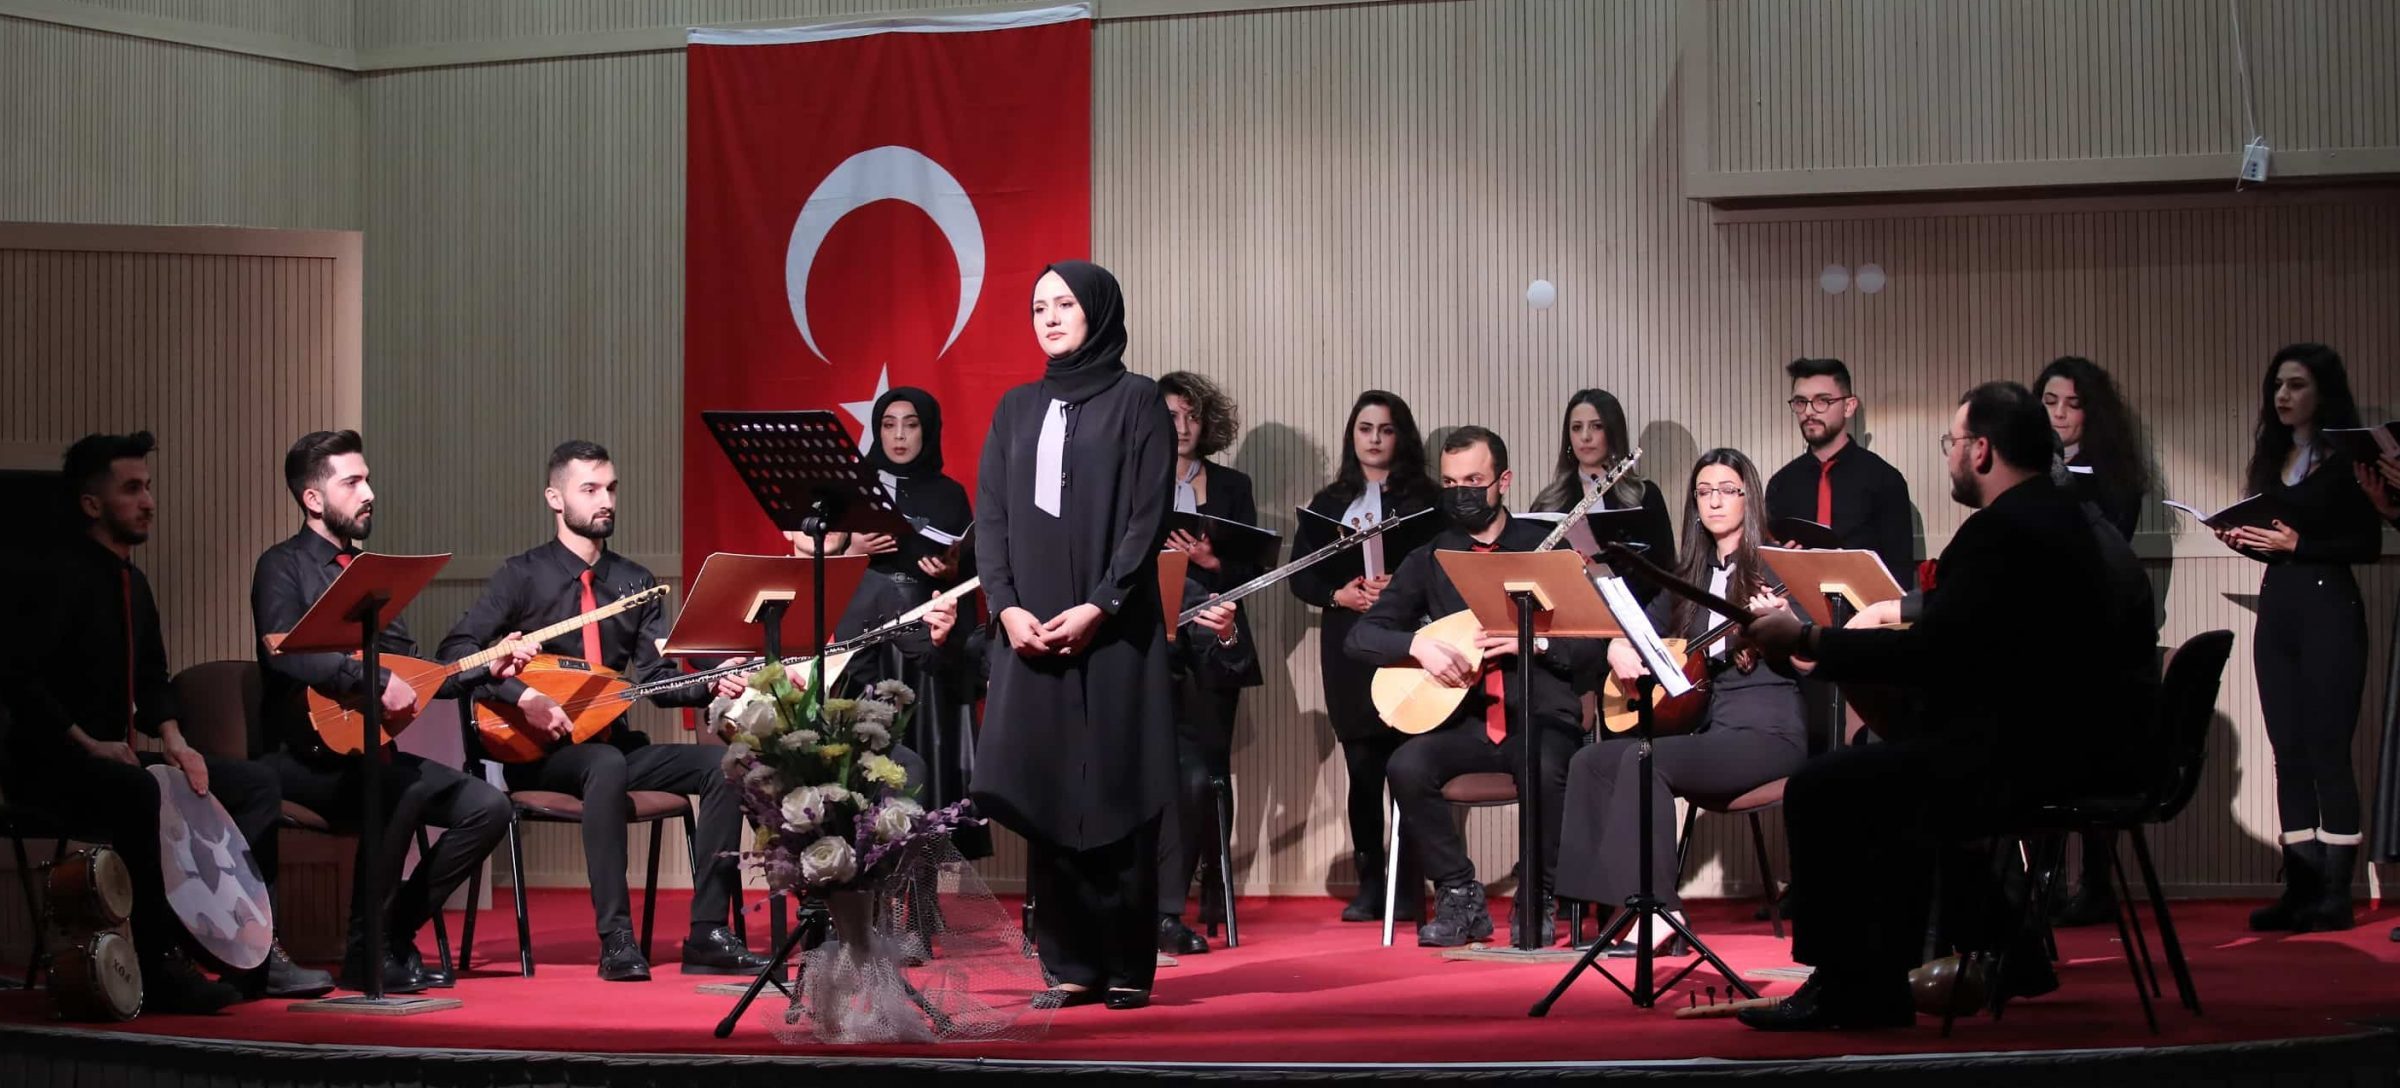 AİÇÜ’de Muzaffer SARISÖZEN’i Anma ve Türk Halk Müziği Konseri